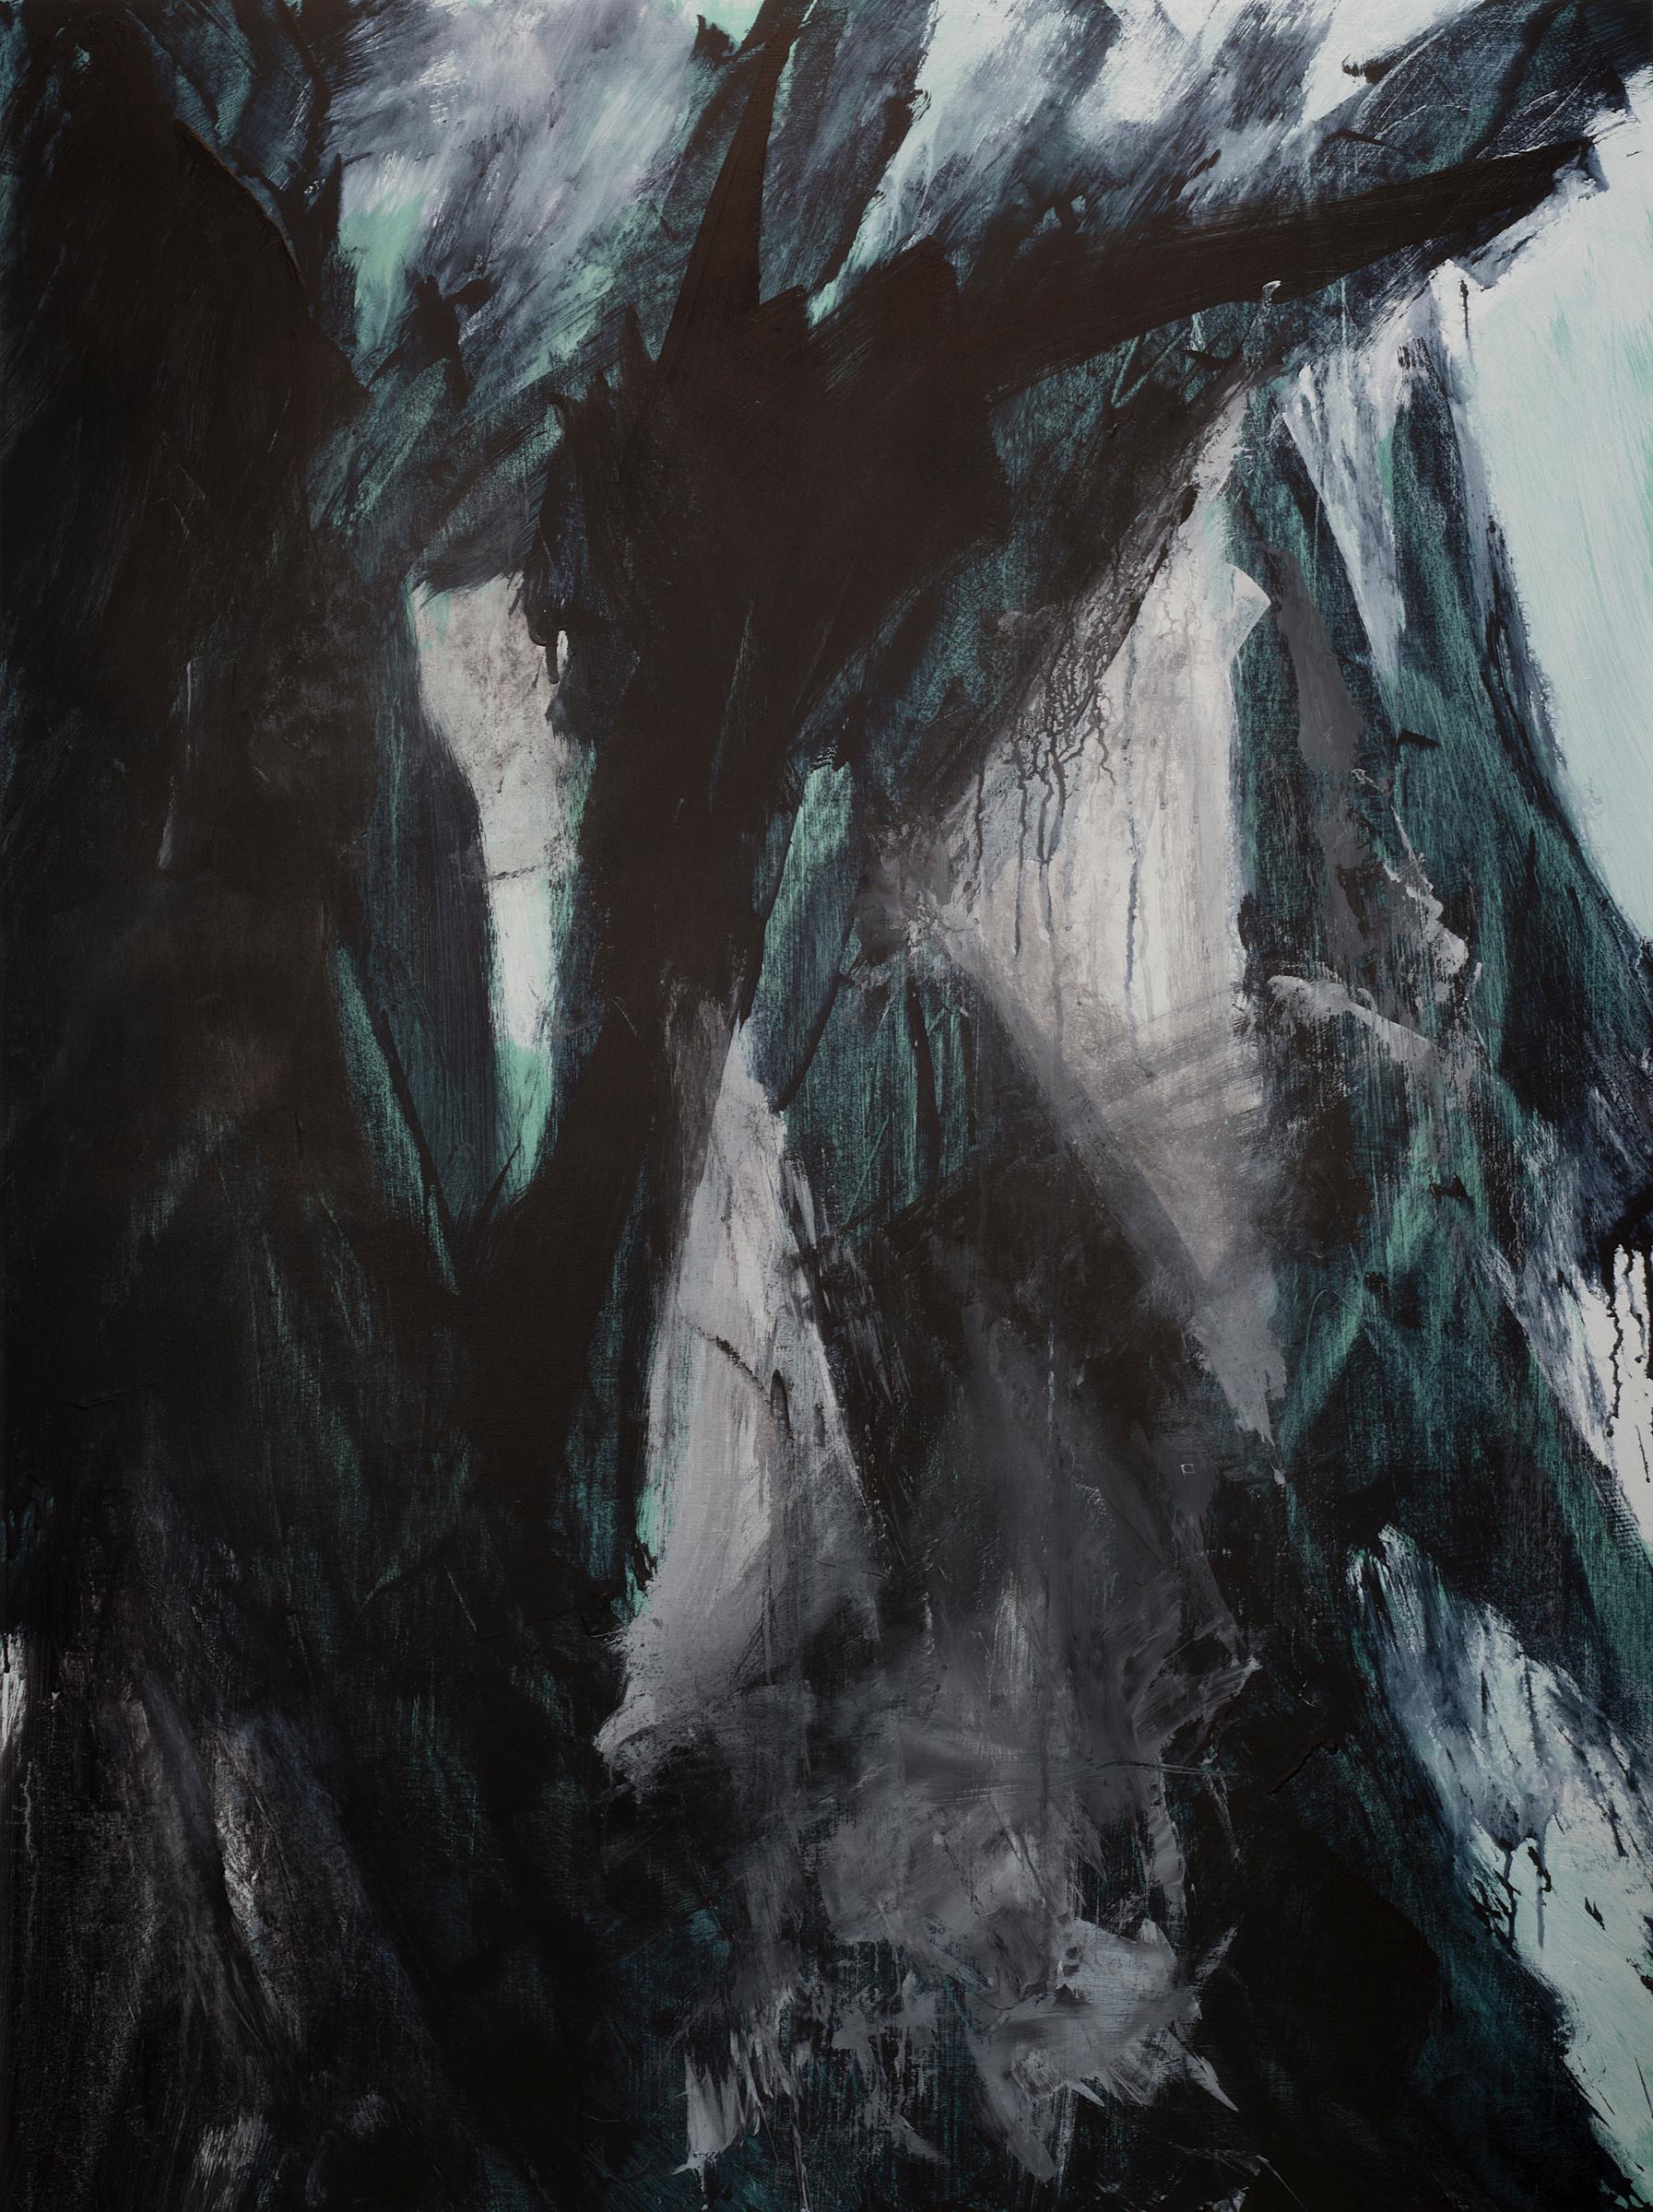 Landscape Painting Stephanie Cate - Europa 21 - Peinture abstraite, espace, audacieuse, noir, blanc, vert, acrylique, bois 